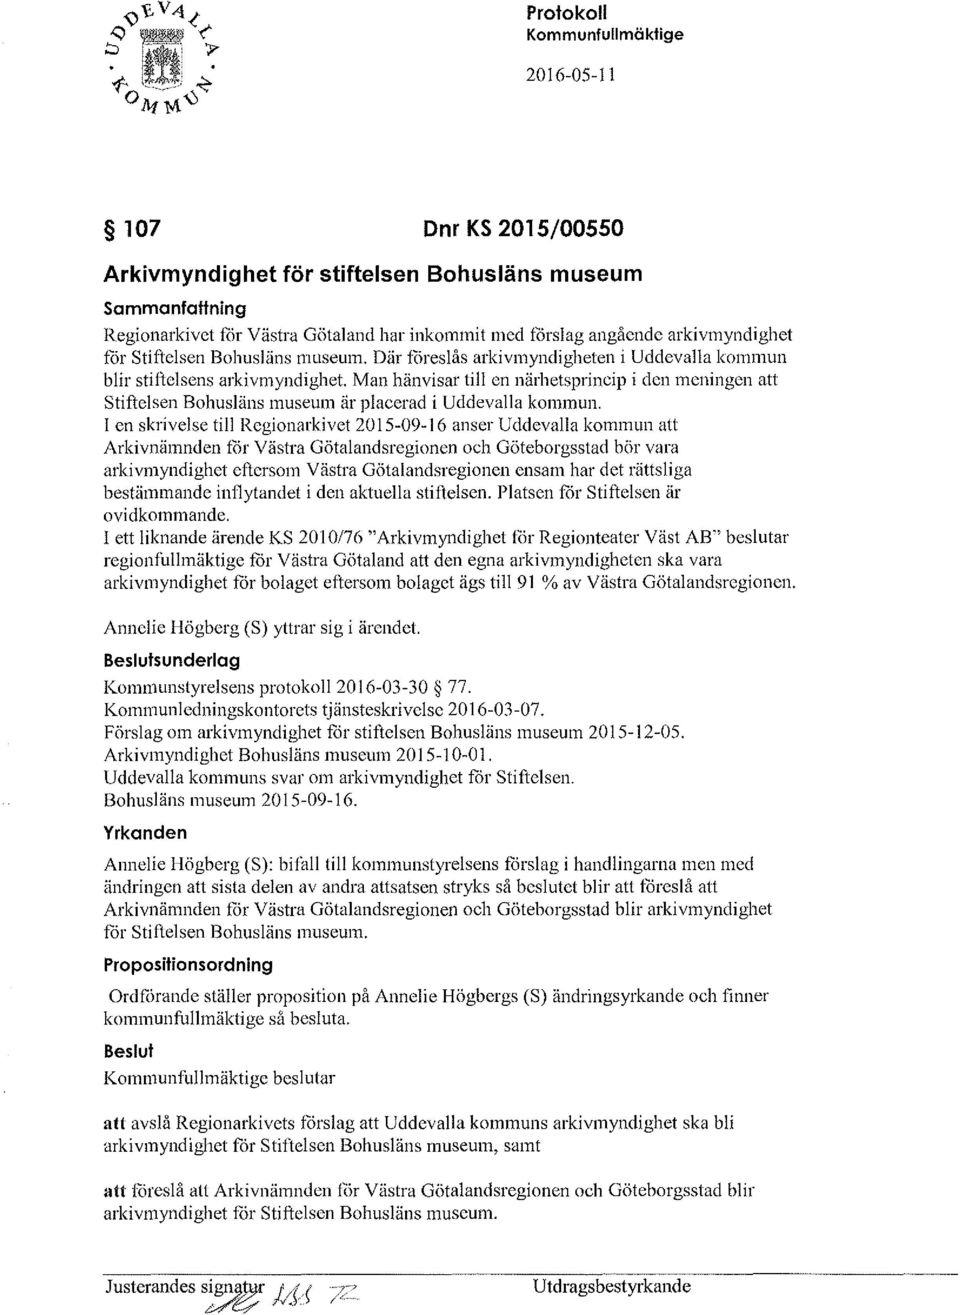 I en skrivelse till Regionarkivet 20I5-09-I6 anser Uddevalla kommun att Arkivnämnden for Västra Götalandsregionen och Göteborgsstad bör vara arkivmyndighet eftersom Västra Götalandsregionen ensam har